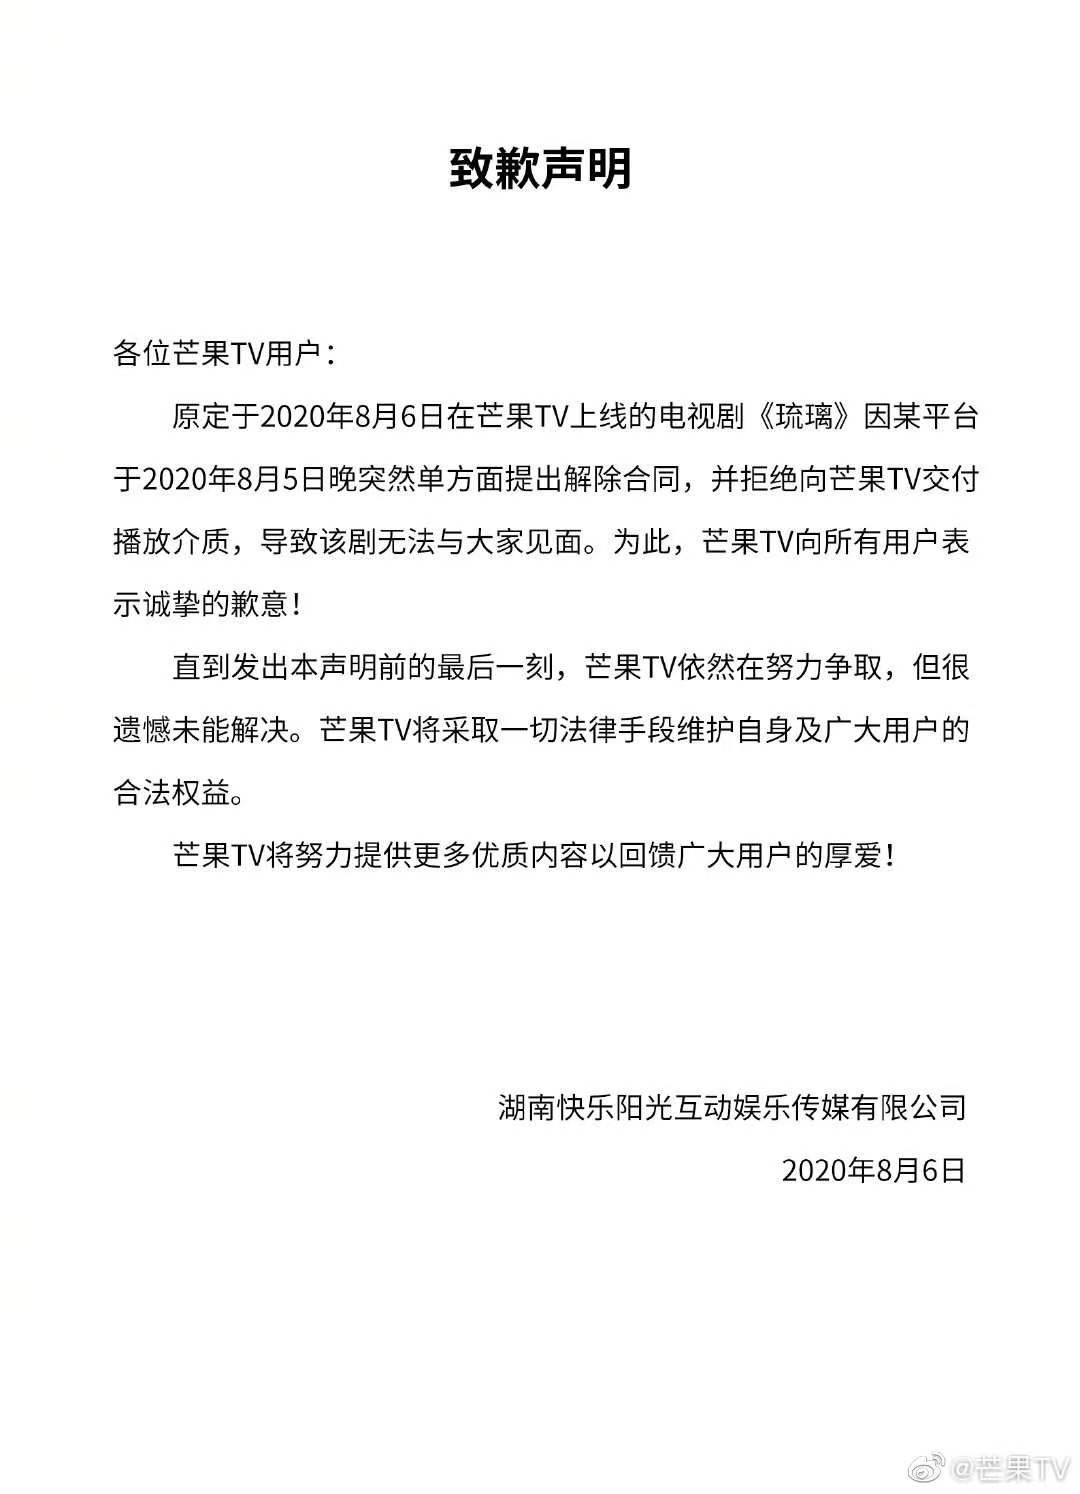 芒果官博发道歉声明:因某平台拒交付《琉璃》无法上线